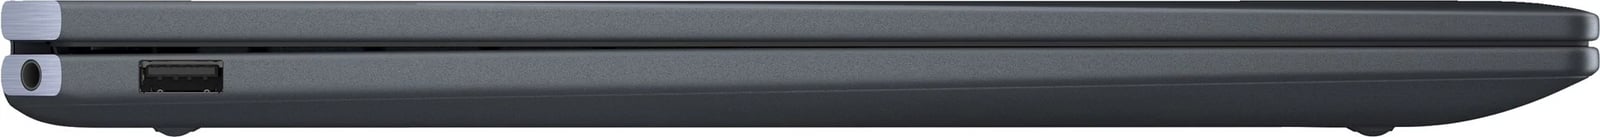 Laptop Hibrid HP Spectre x360 16-aa0065nw, 16 inç, Intel Core Ultra 7, 16 GB RAM, 1 TB SSD, Blu